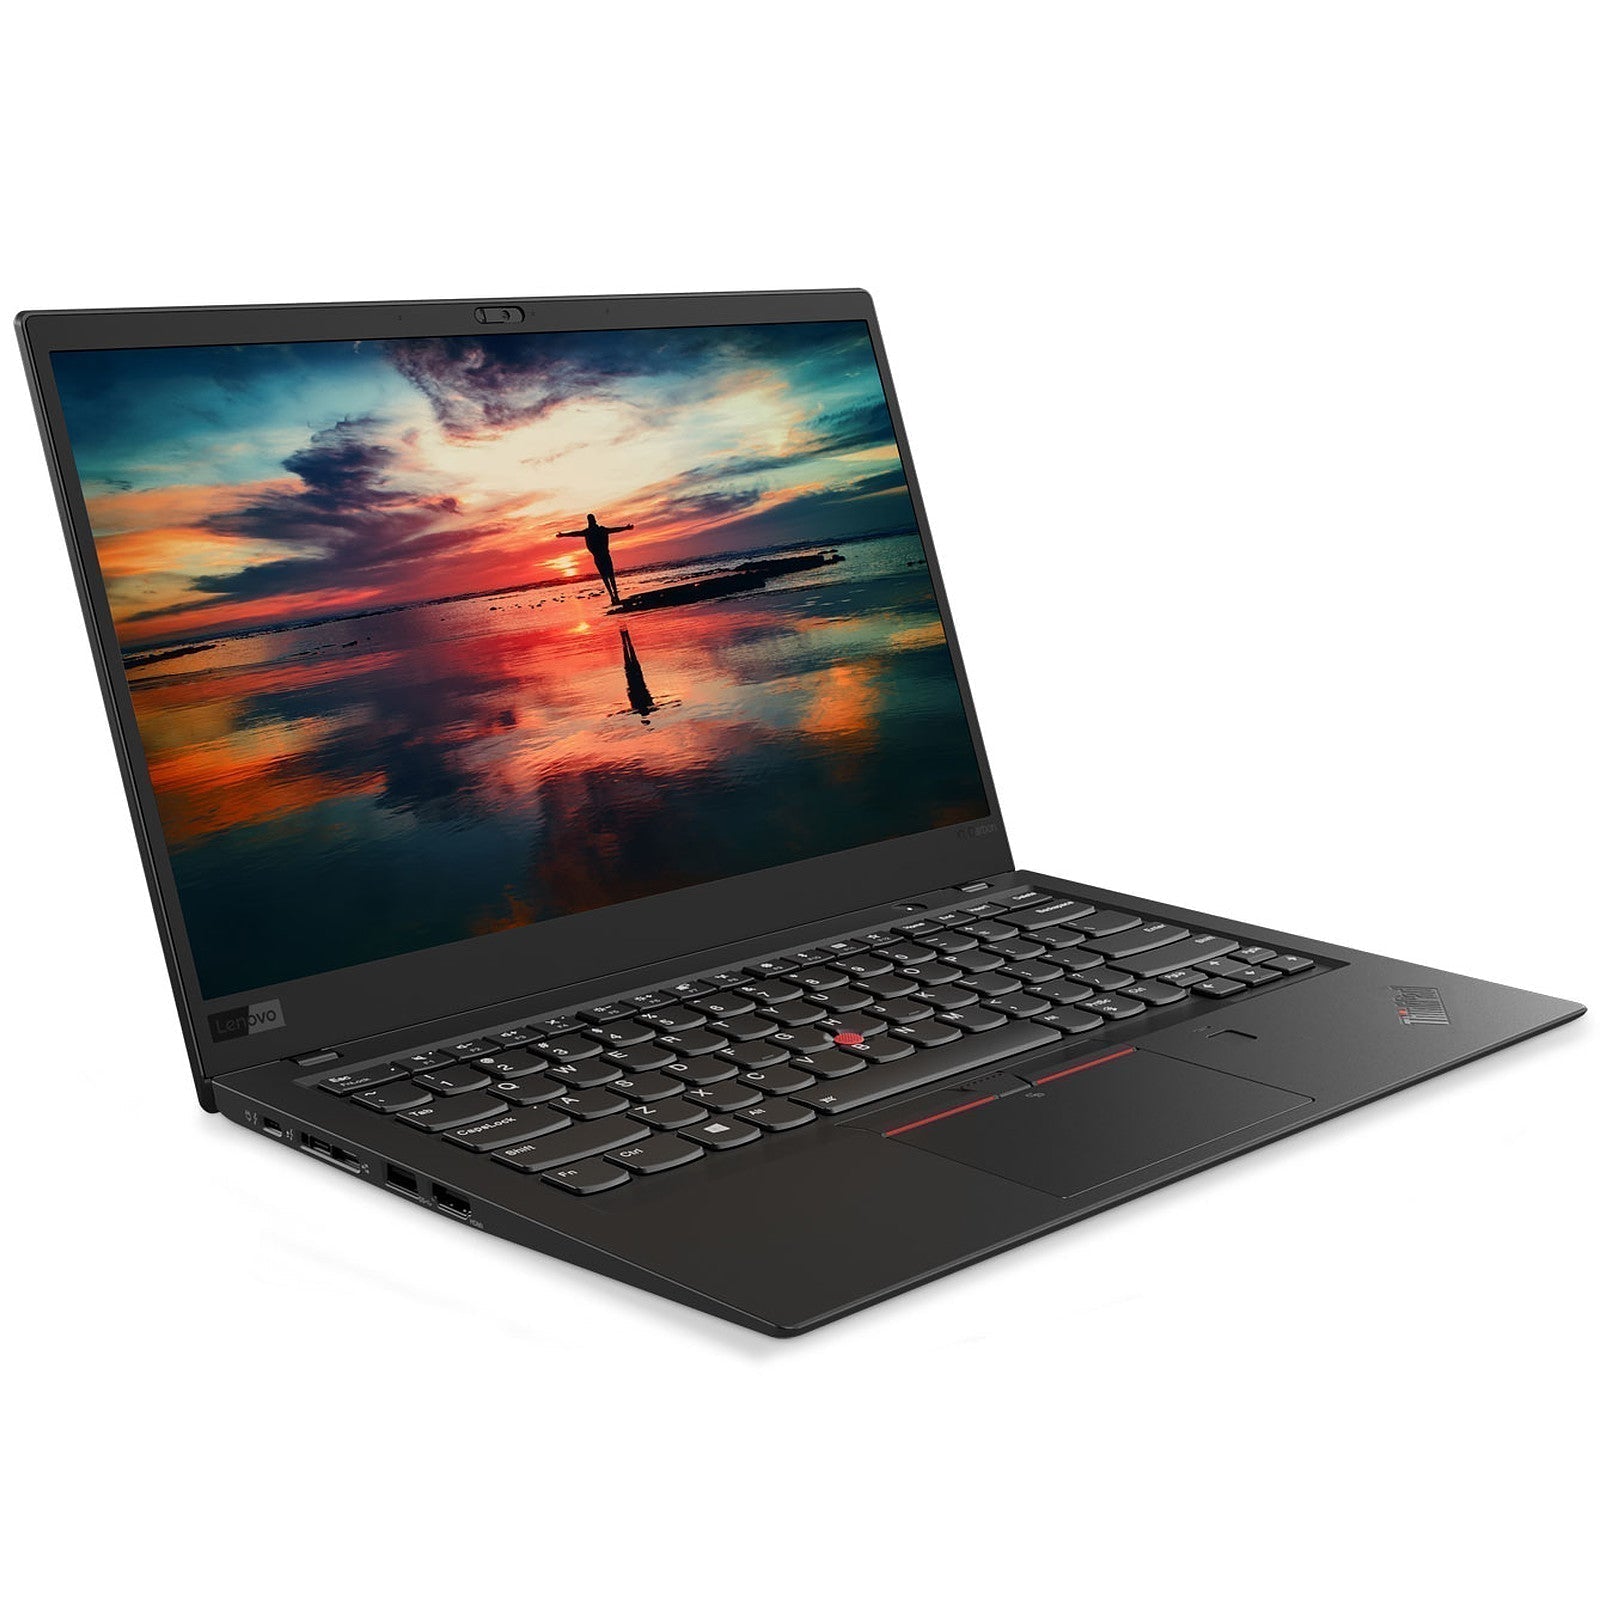 Billede af Lenovo ThinkPad X1 Carbon 7. gen. Touch | i5 | 16GB | 256GB SSD - Brugt - Meget god stand